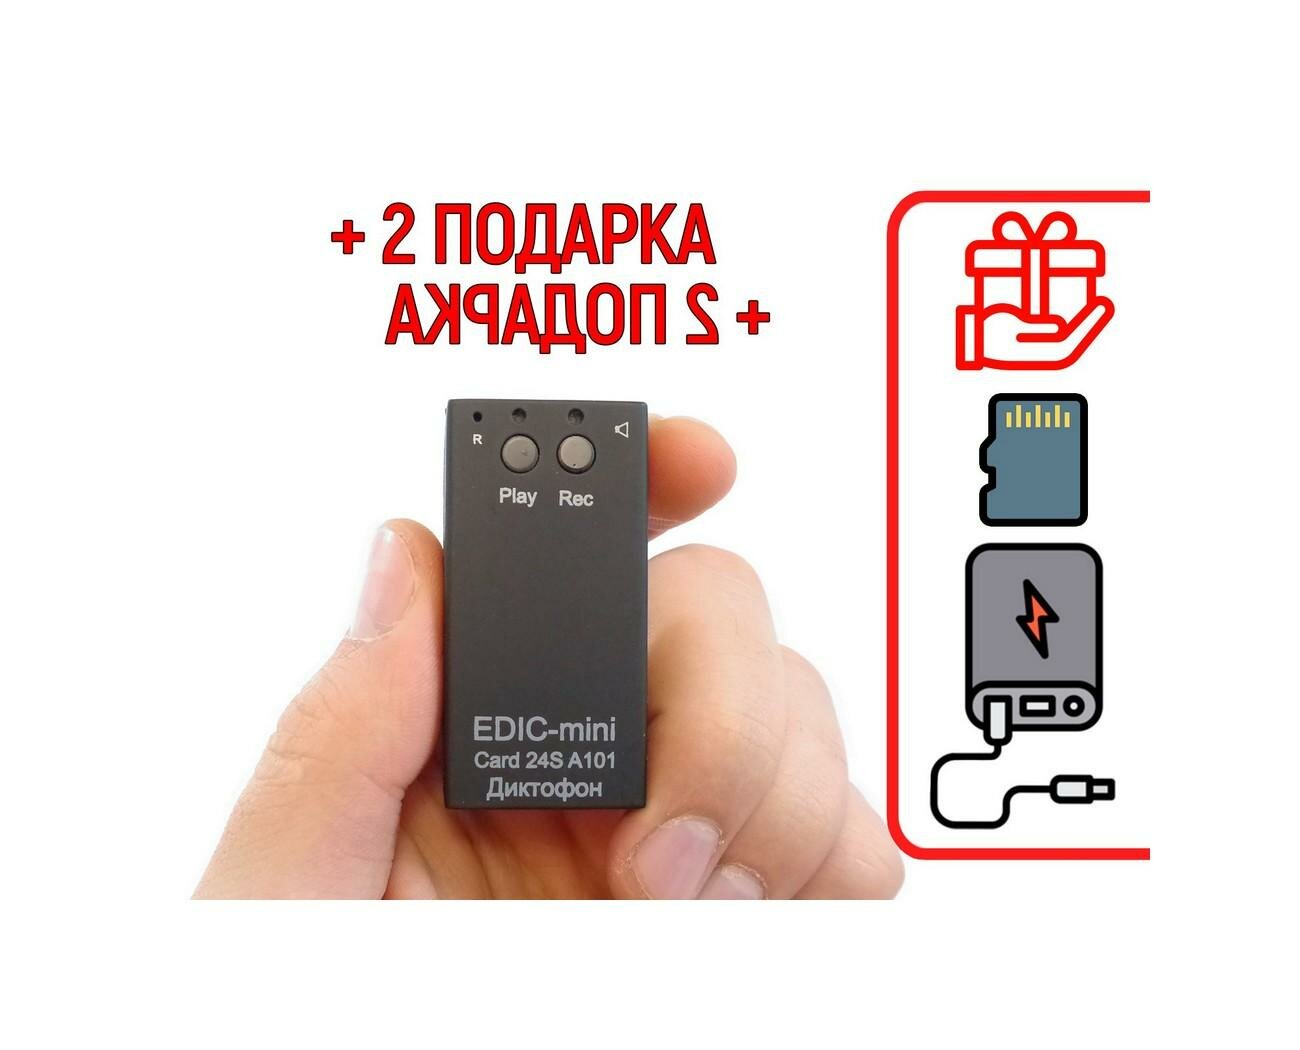 Диктофон для записи голоса Эдик-mini CARD-24S mod: A-101 (W18940CI) + 2 подарка (Power-bank 10000 mAh + SD карта) - голосовая активация VAS, 4 тайме